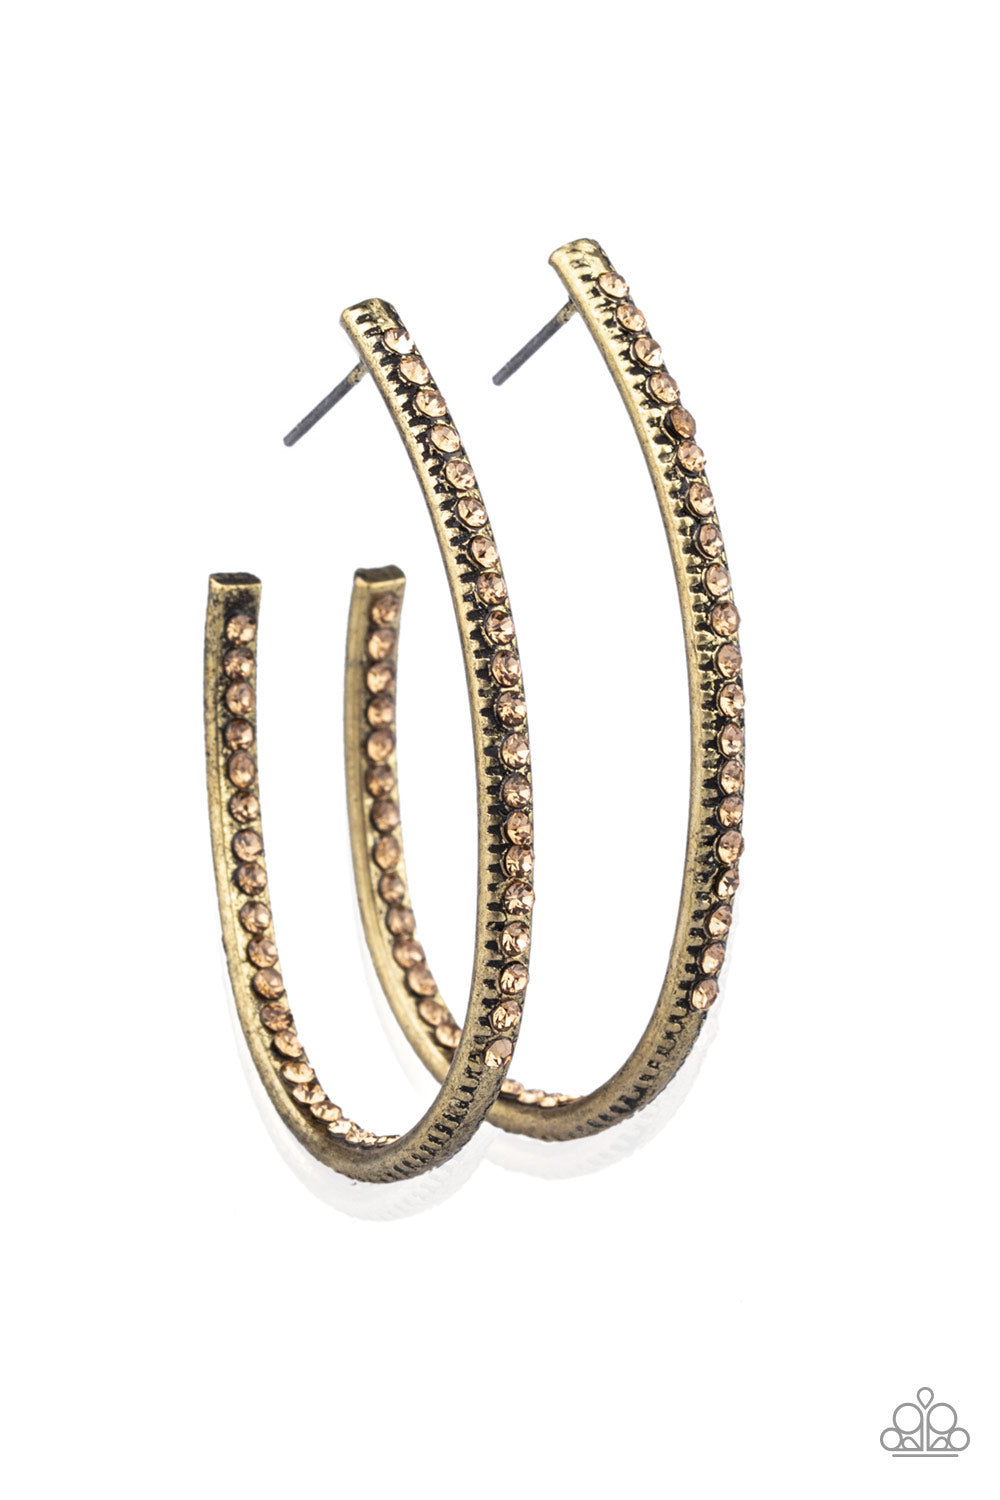 Globetrotting Glitter Brass Hoop Earrings - Daria's Blings N Things